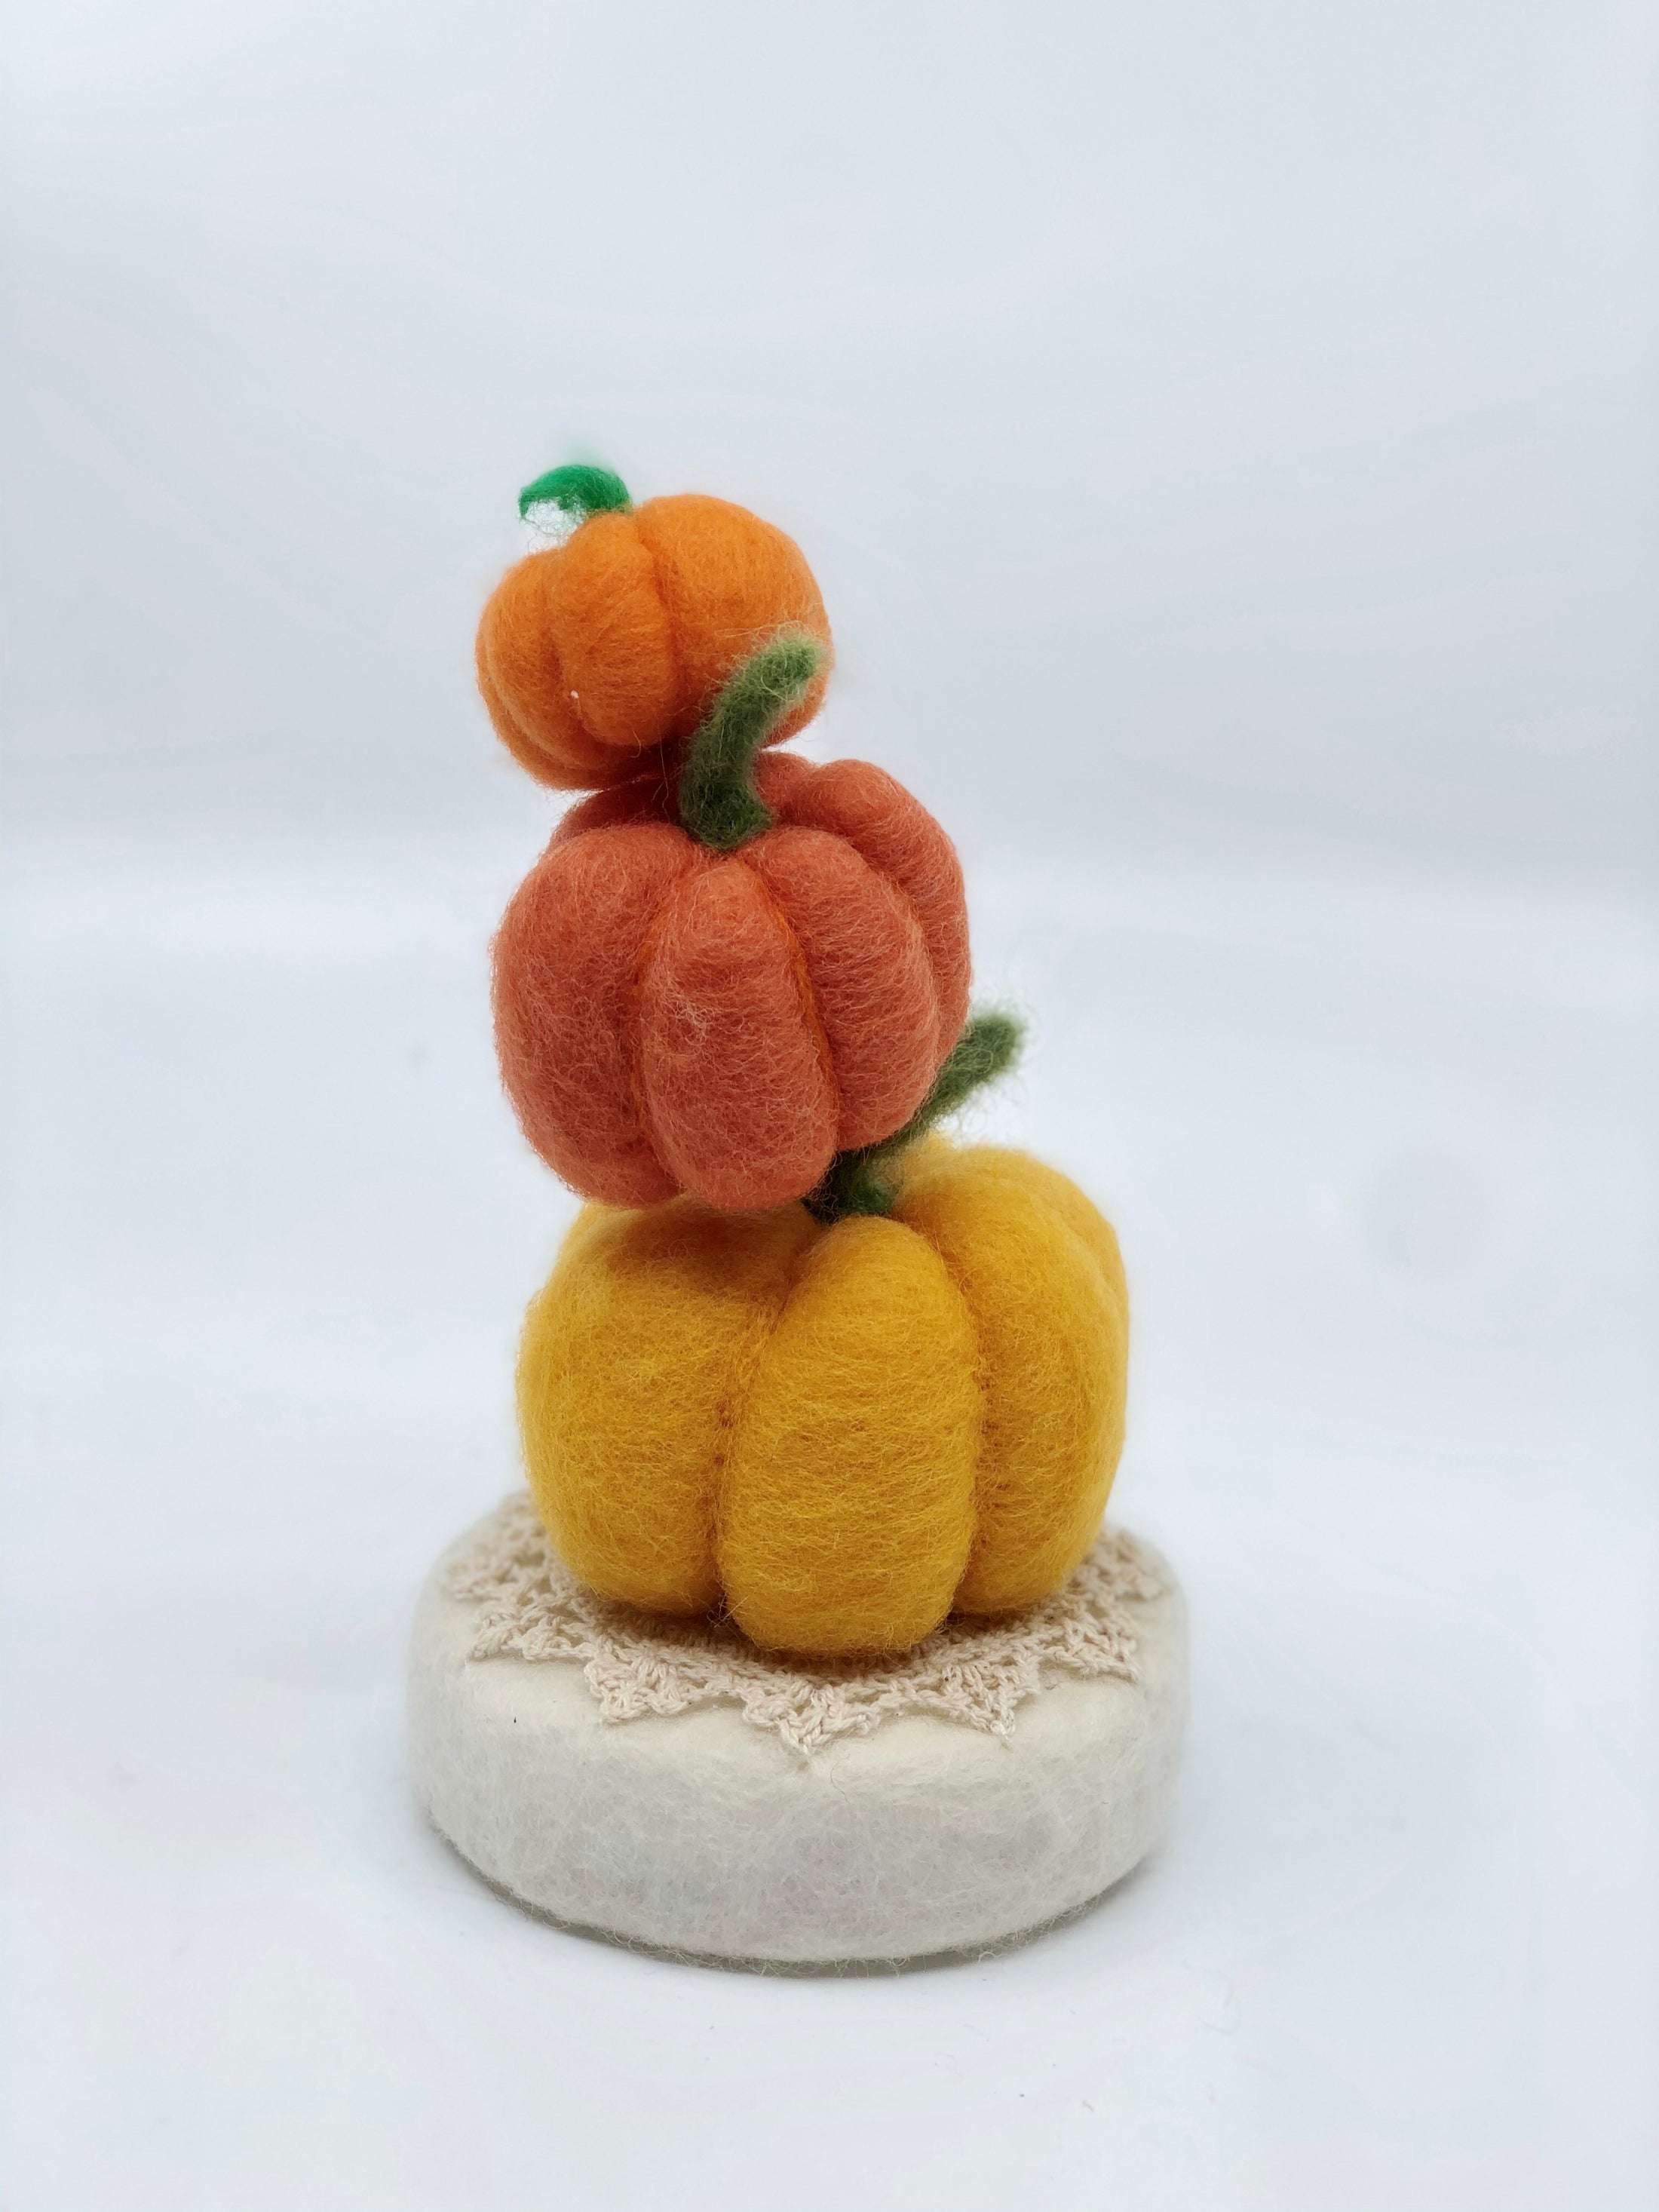 October - Pumpkins